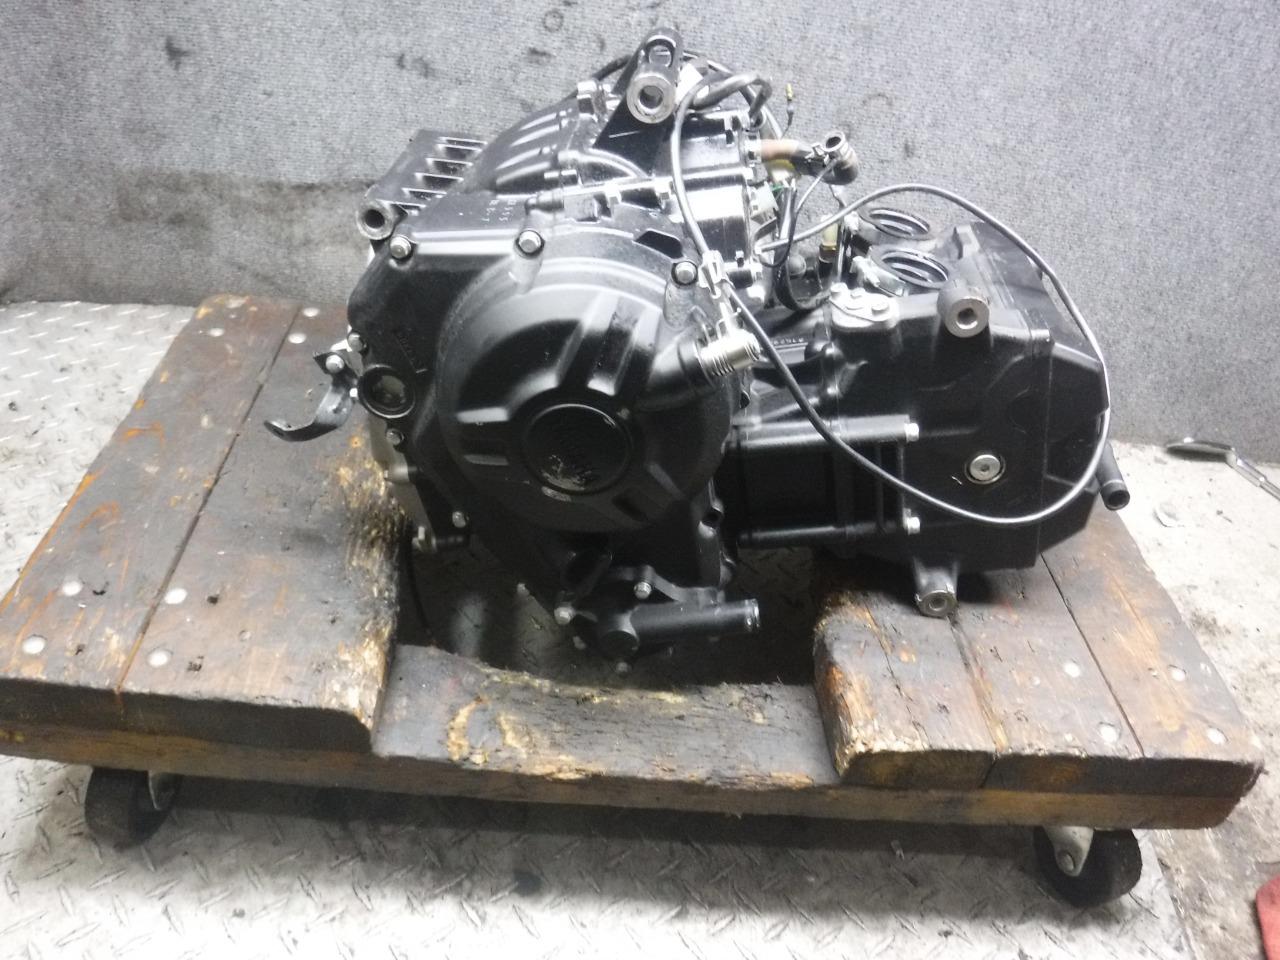 15 Yamaha YZF R3 Motor Engine Running 45C eBay